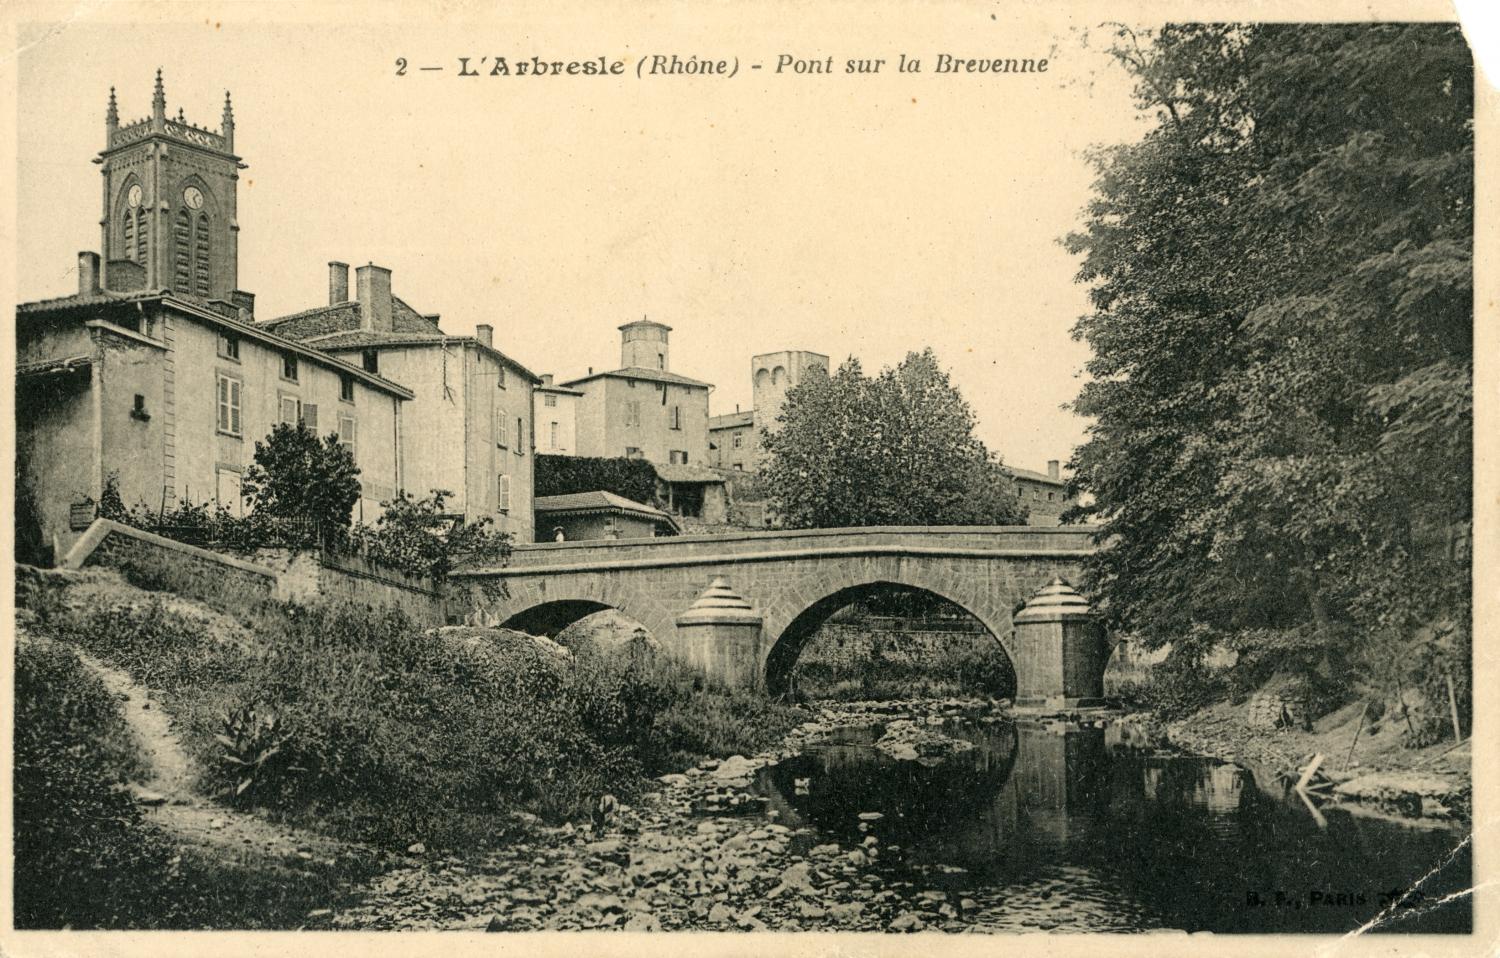 L'Arbresle (Rhône). - Pont sur la Brevenne